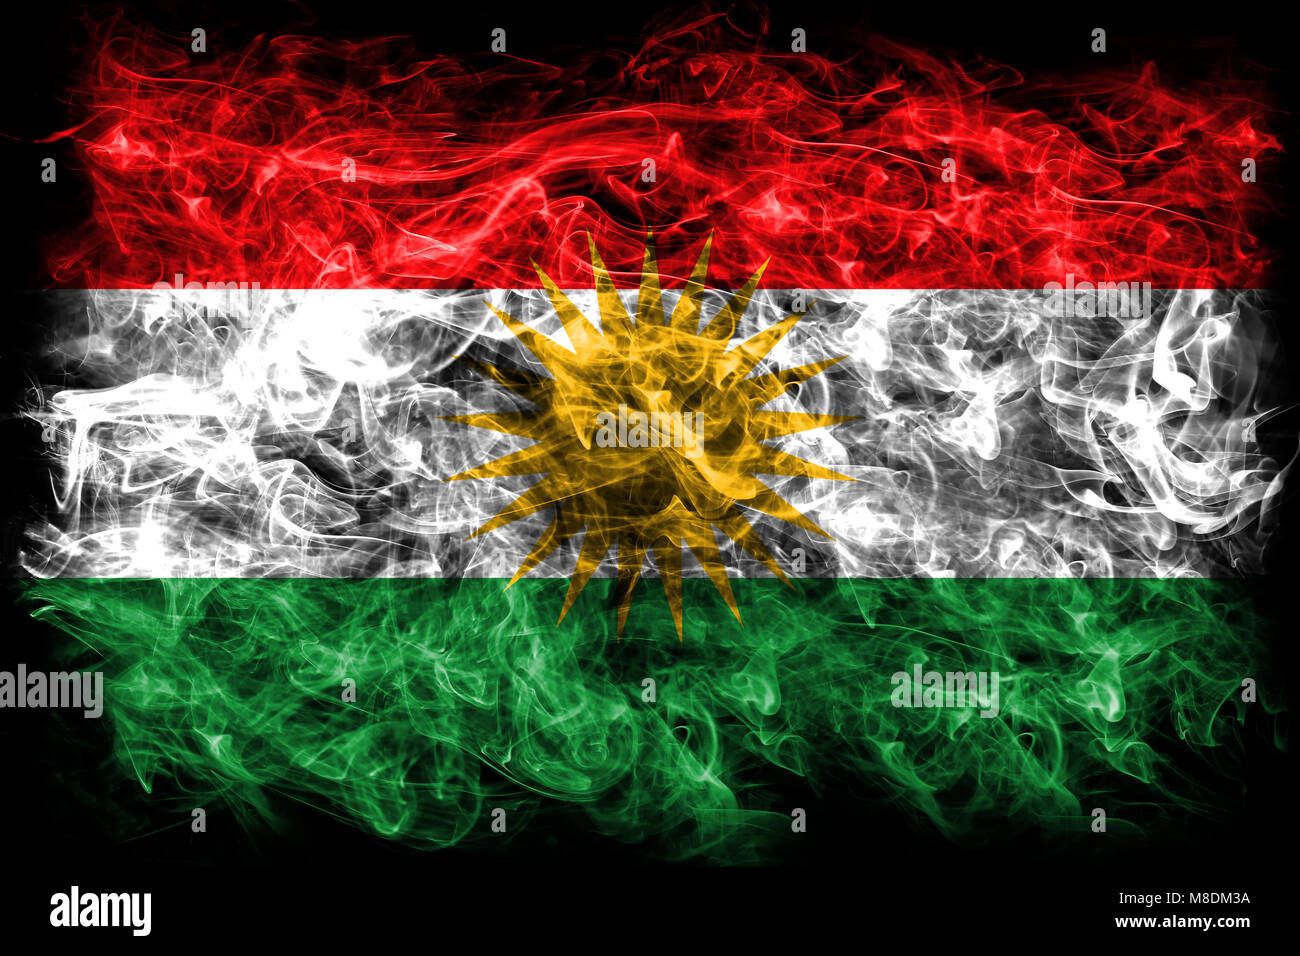 Wallpaper ID 1663531  1080P kurdistan love free download